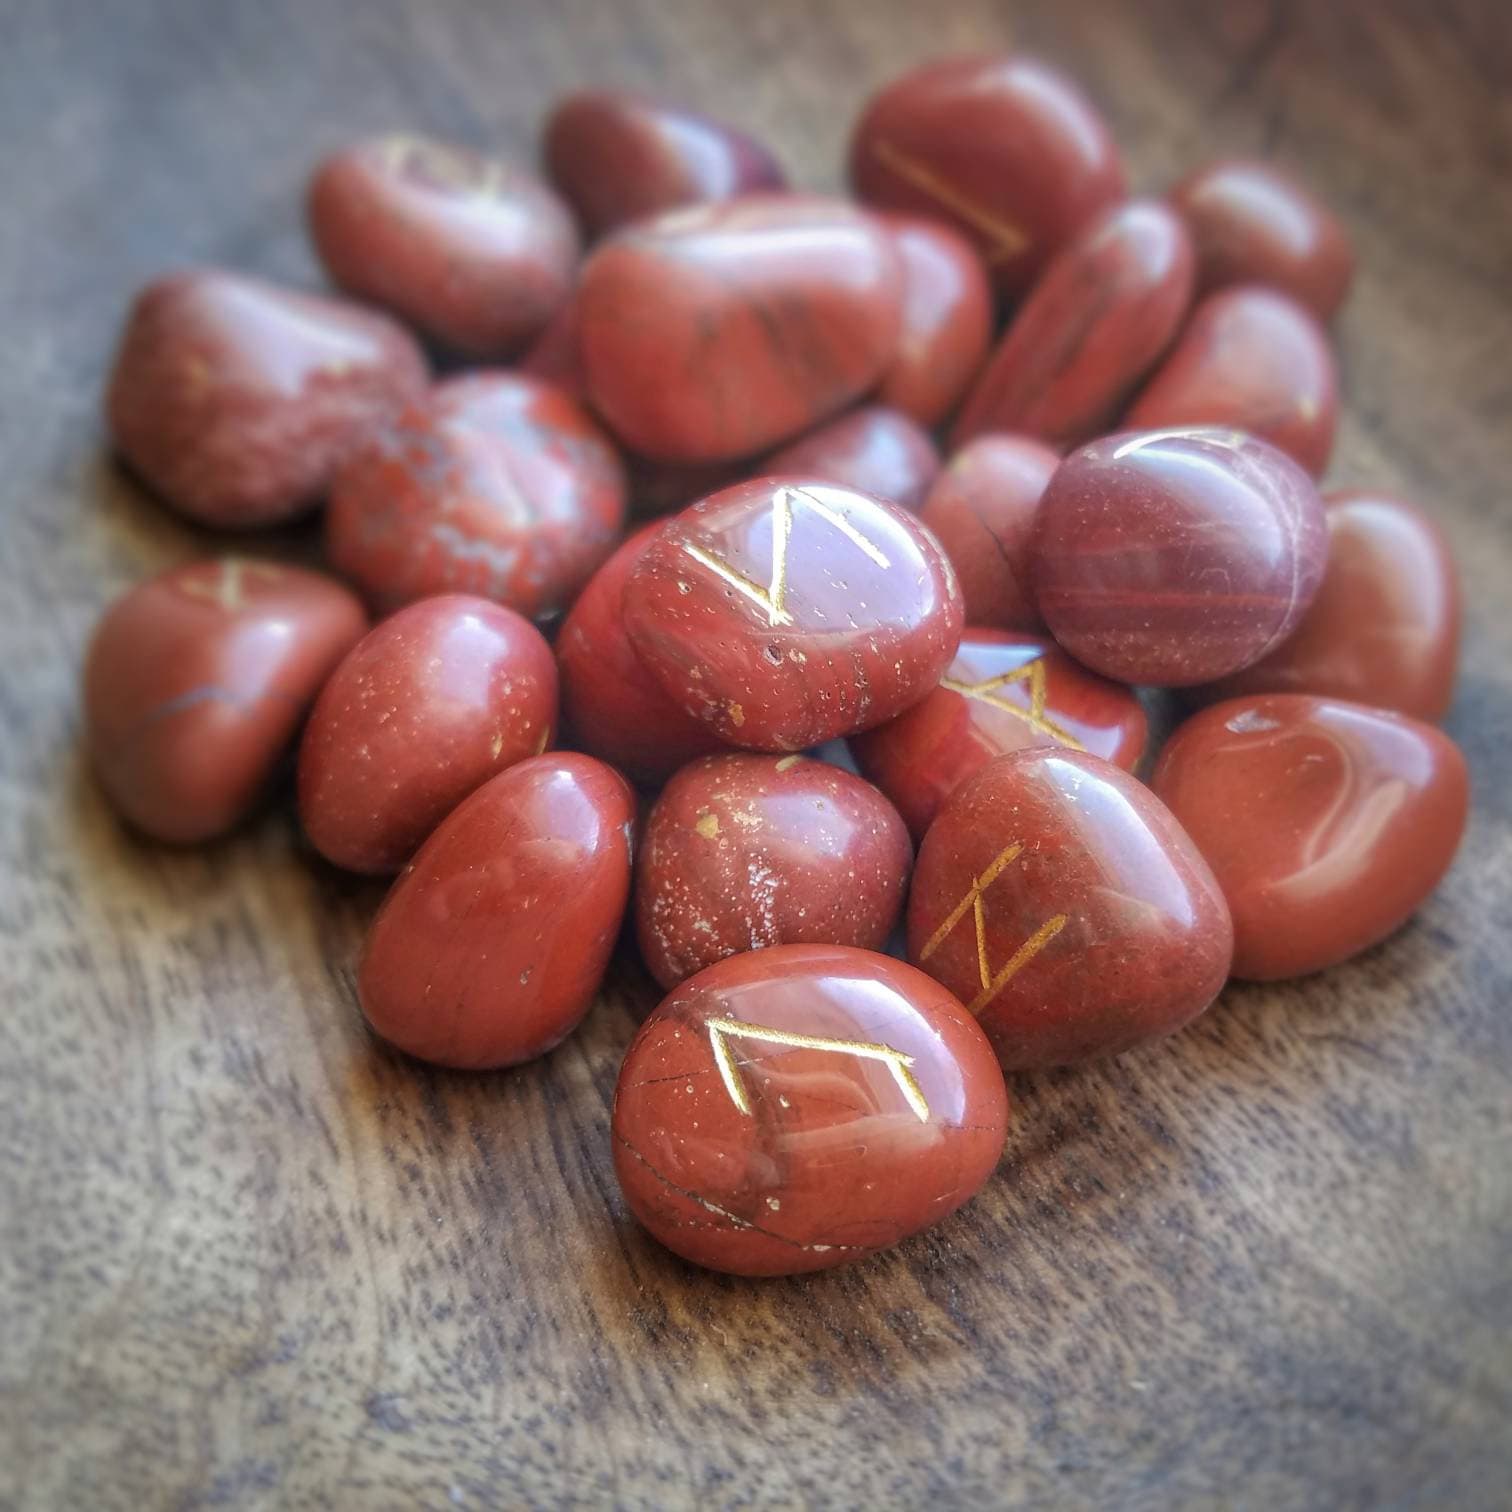 Moss Agate Rune Stones, Spiritual Stones, Rune Stone Symbols, Rune